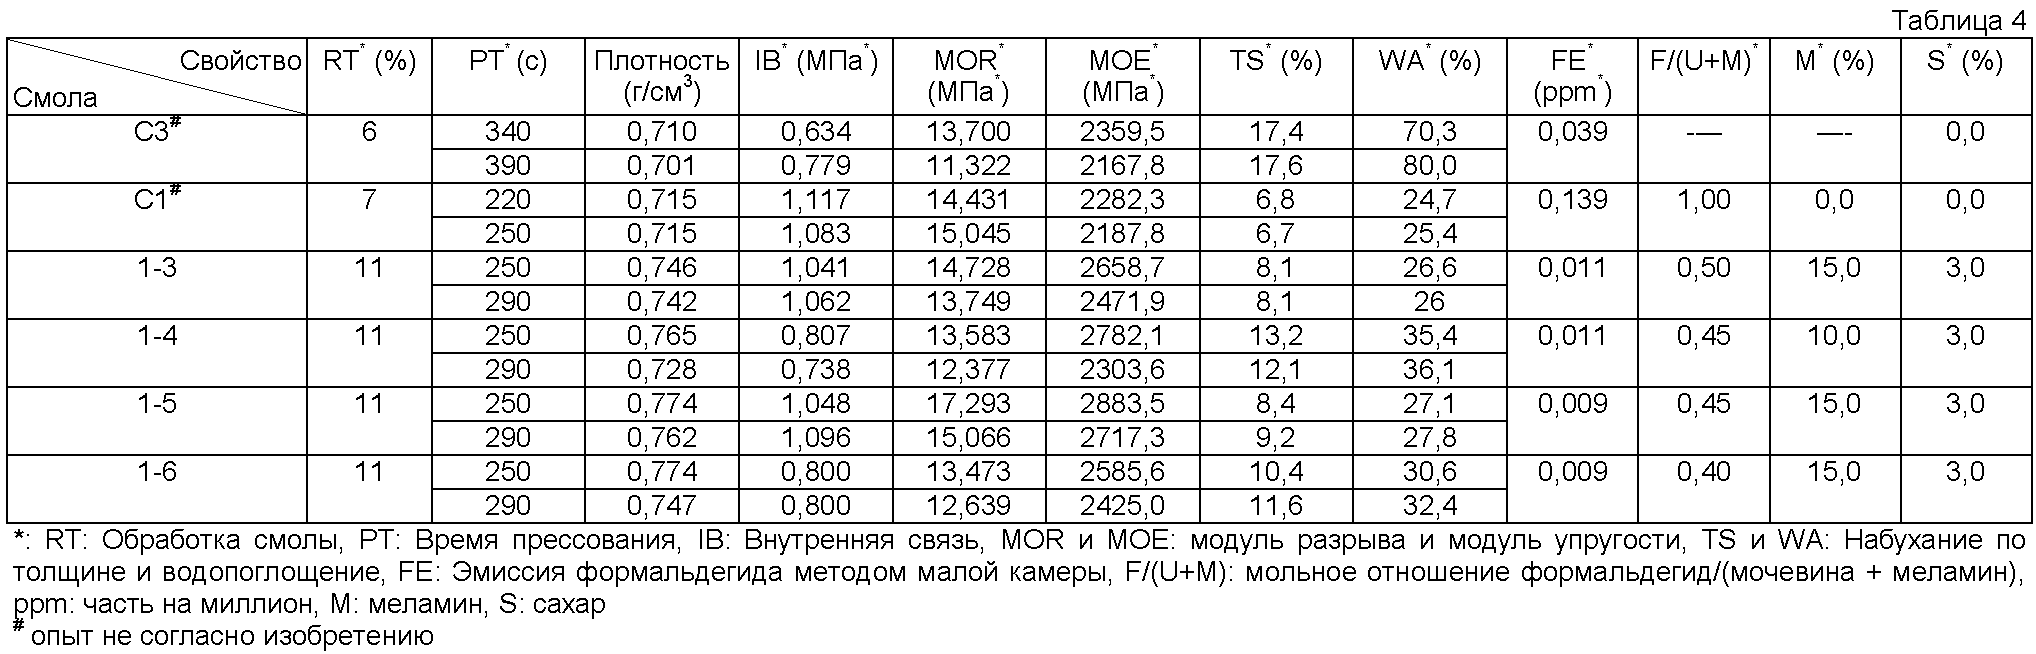 Плотность МДФ кг/м3